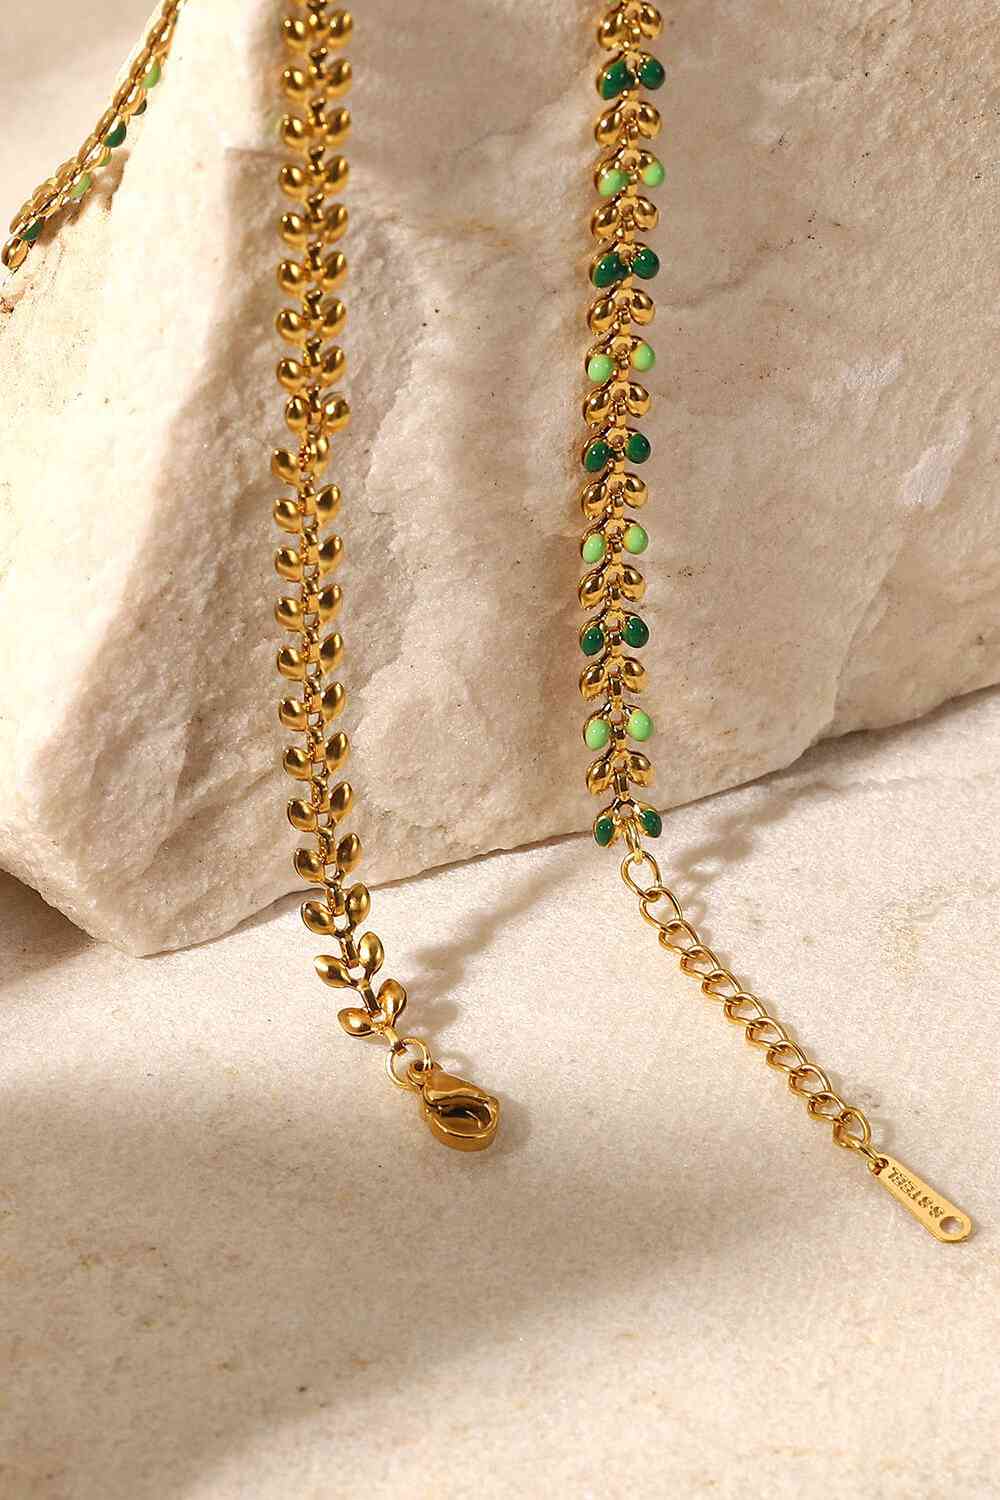 Halskette mit Blattkette und Karabinerverschluss